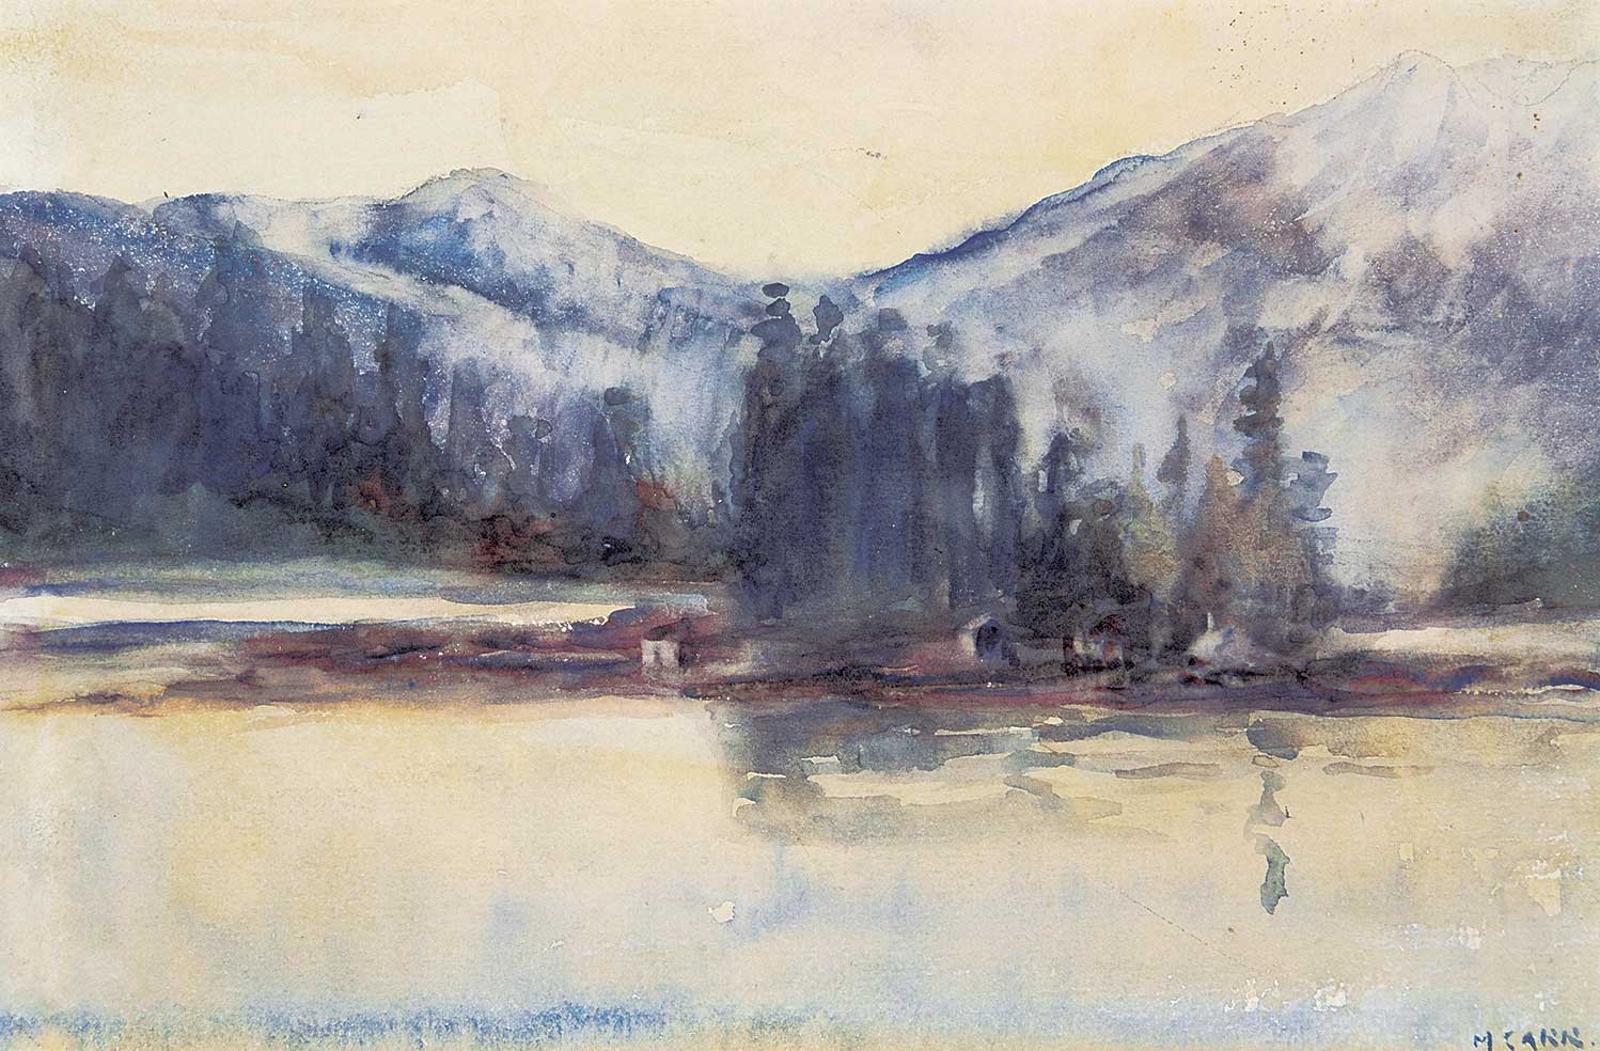 Emily Carr (1871-1945) - Untitled - B.C. Coast